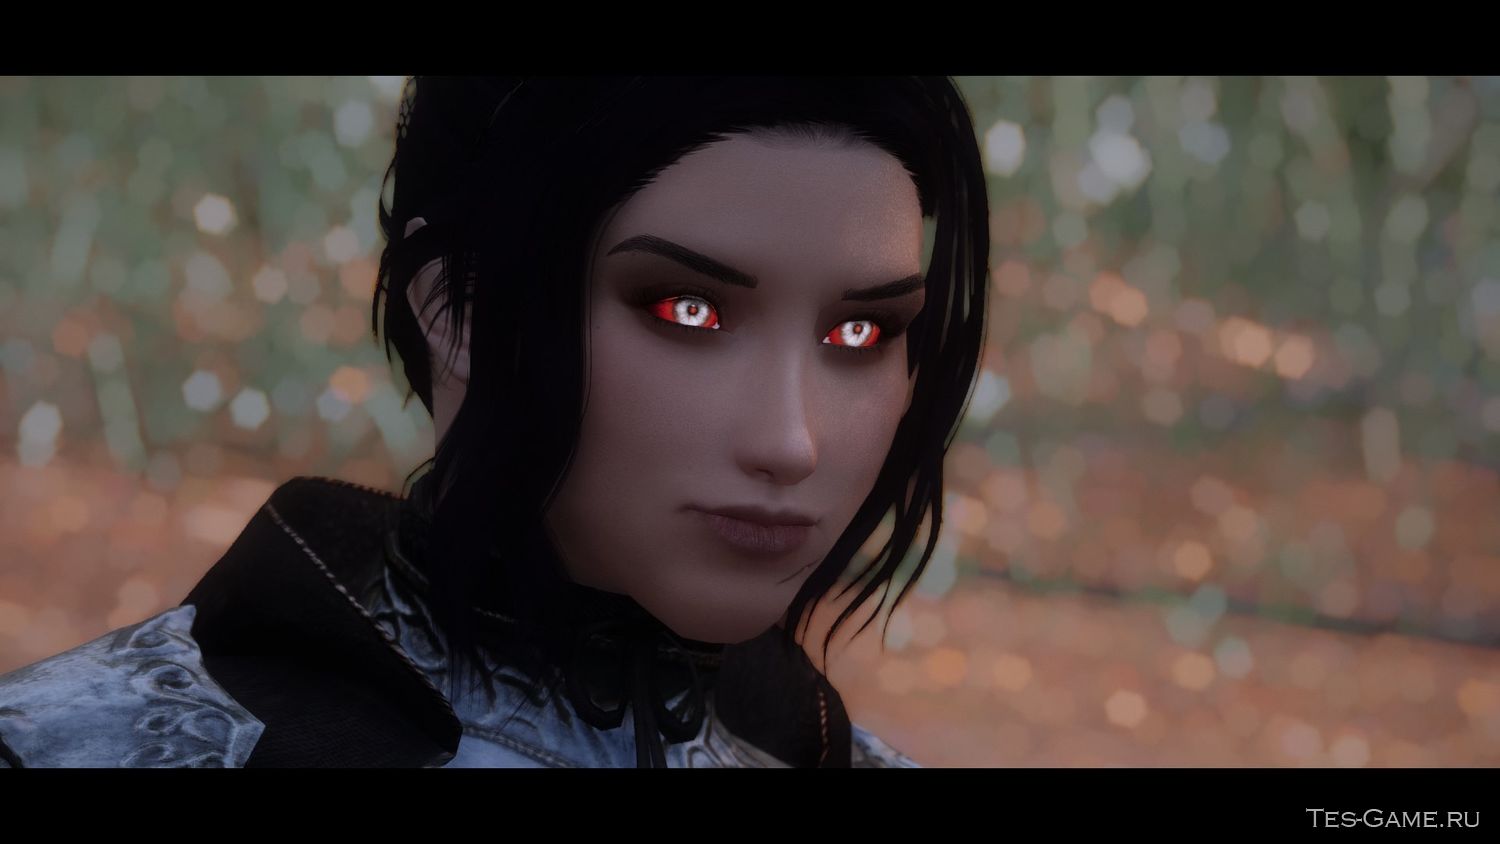 Плагин для Skyrim добавляет новые красивые серебристые вампирские глаза для...